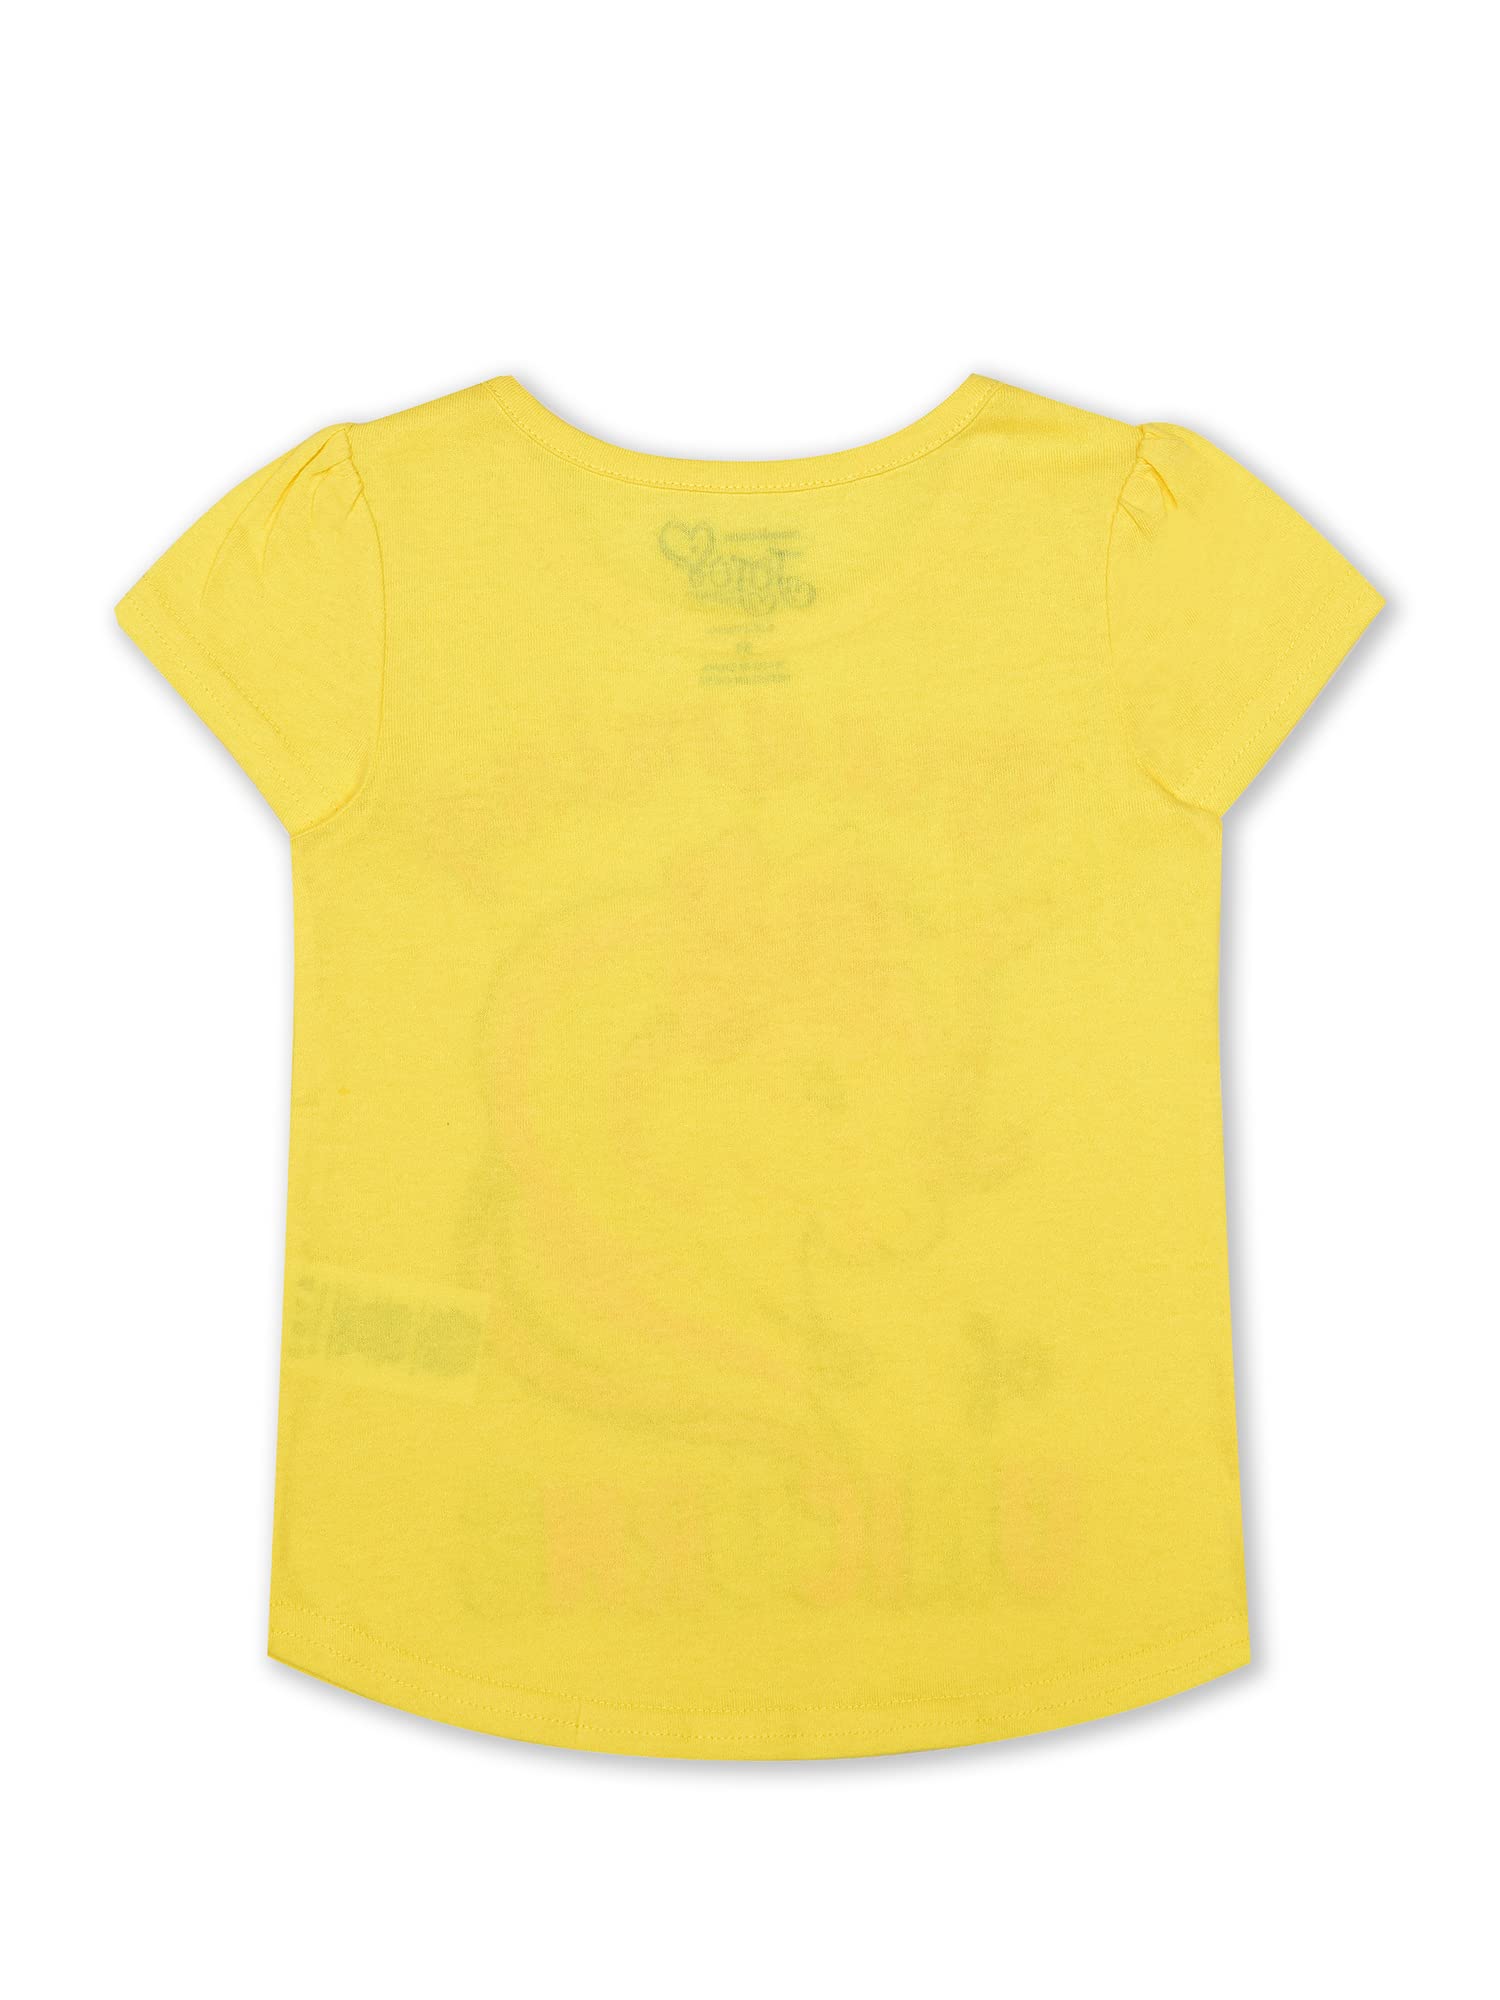 Nickelodeon Girl's 4 Pack JoJo Siwa Short Sleeve Tee Shirt Set